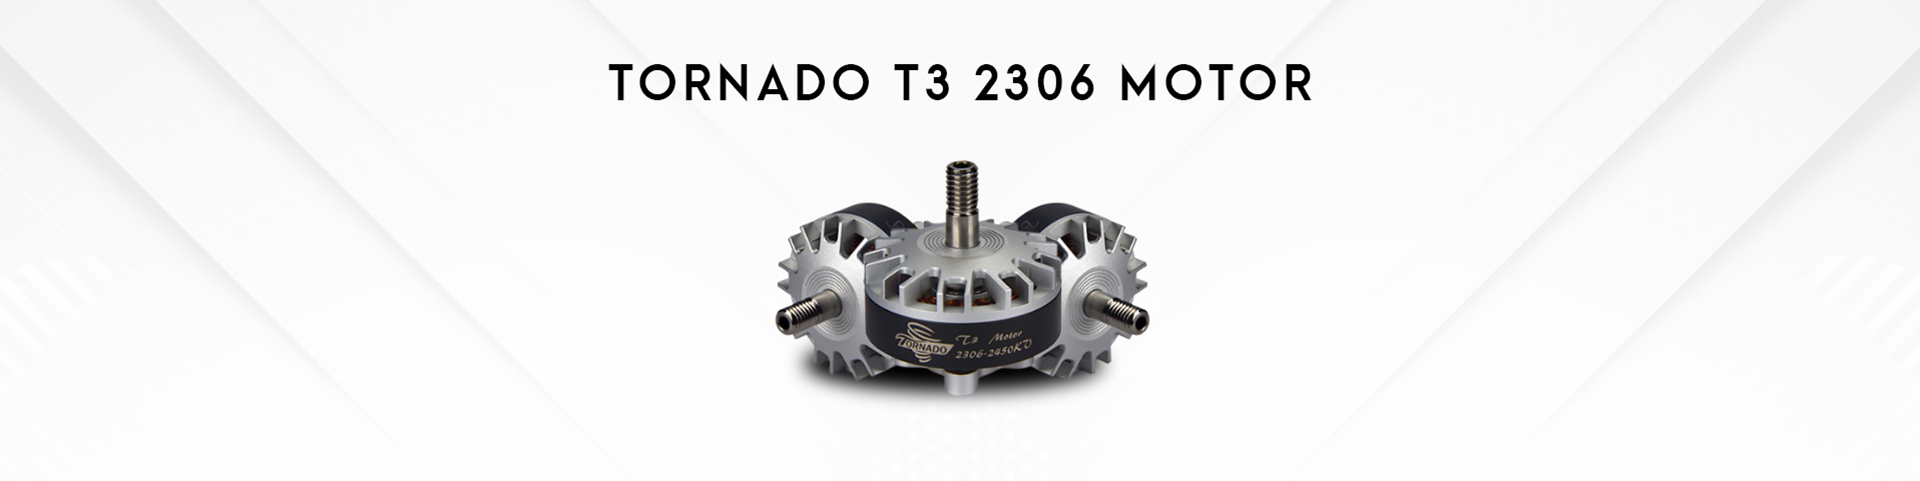 Tornado T3 2306 Motor